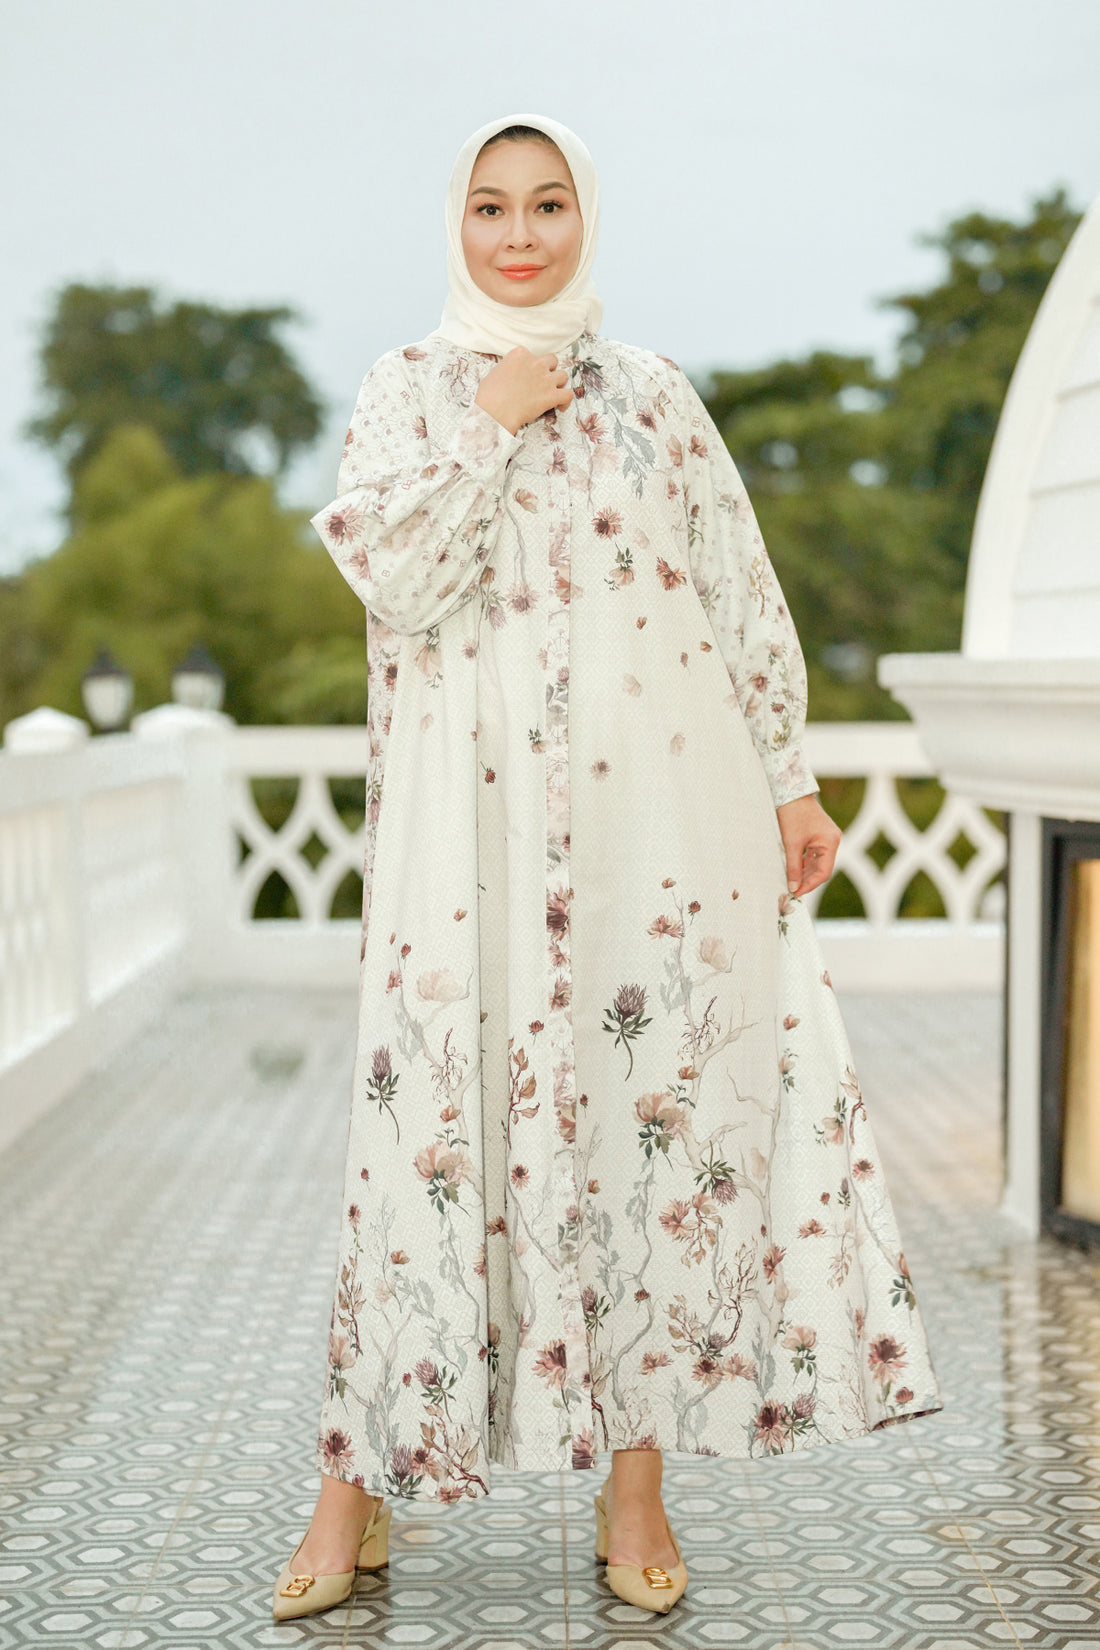 5 Rekomendasi Dress Hijab Simple Elegan dan Stylish ala Benang Jarum